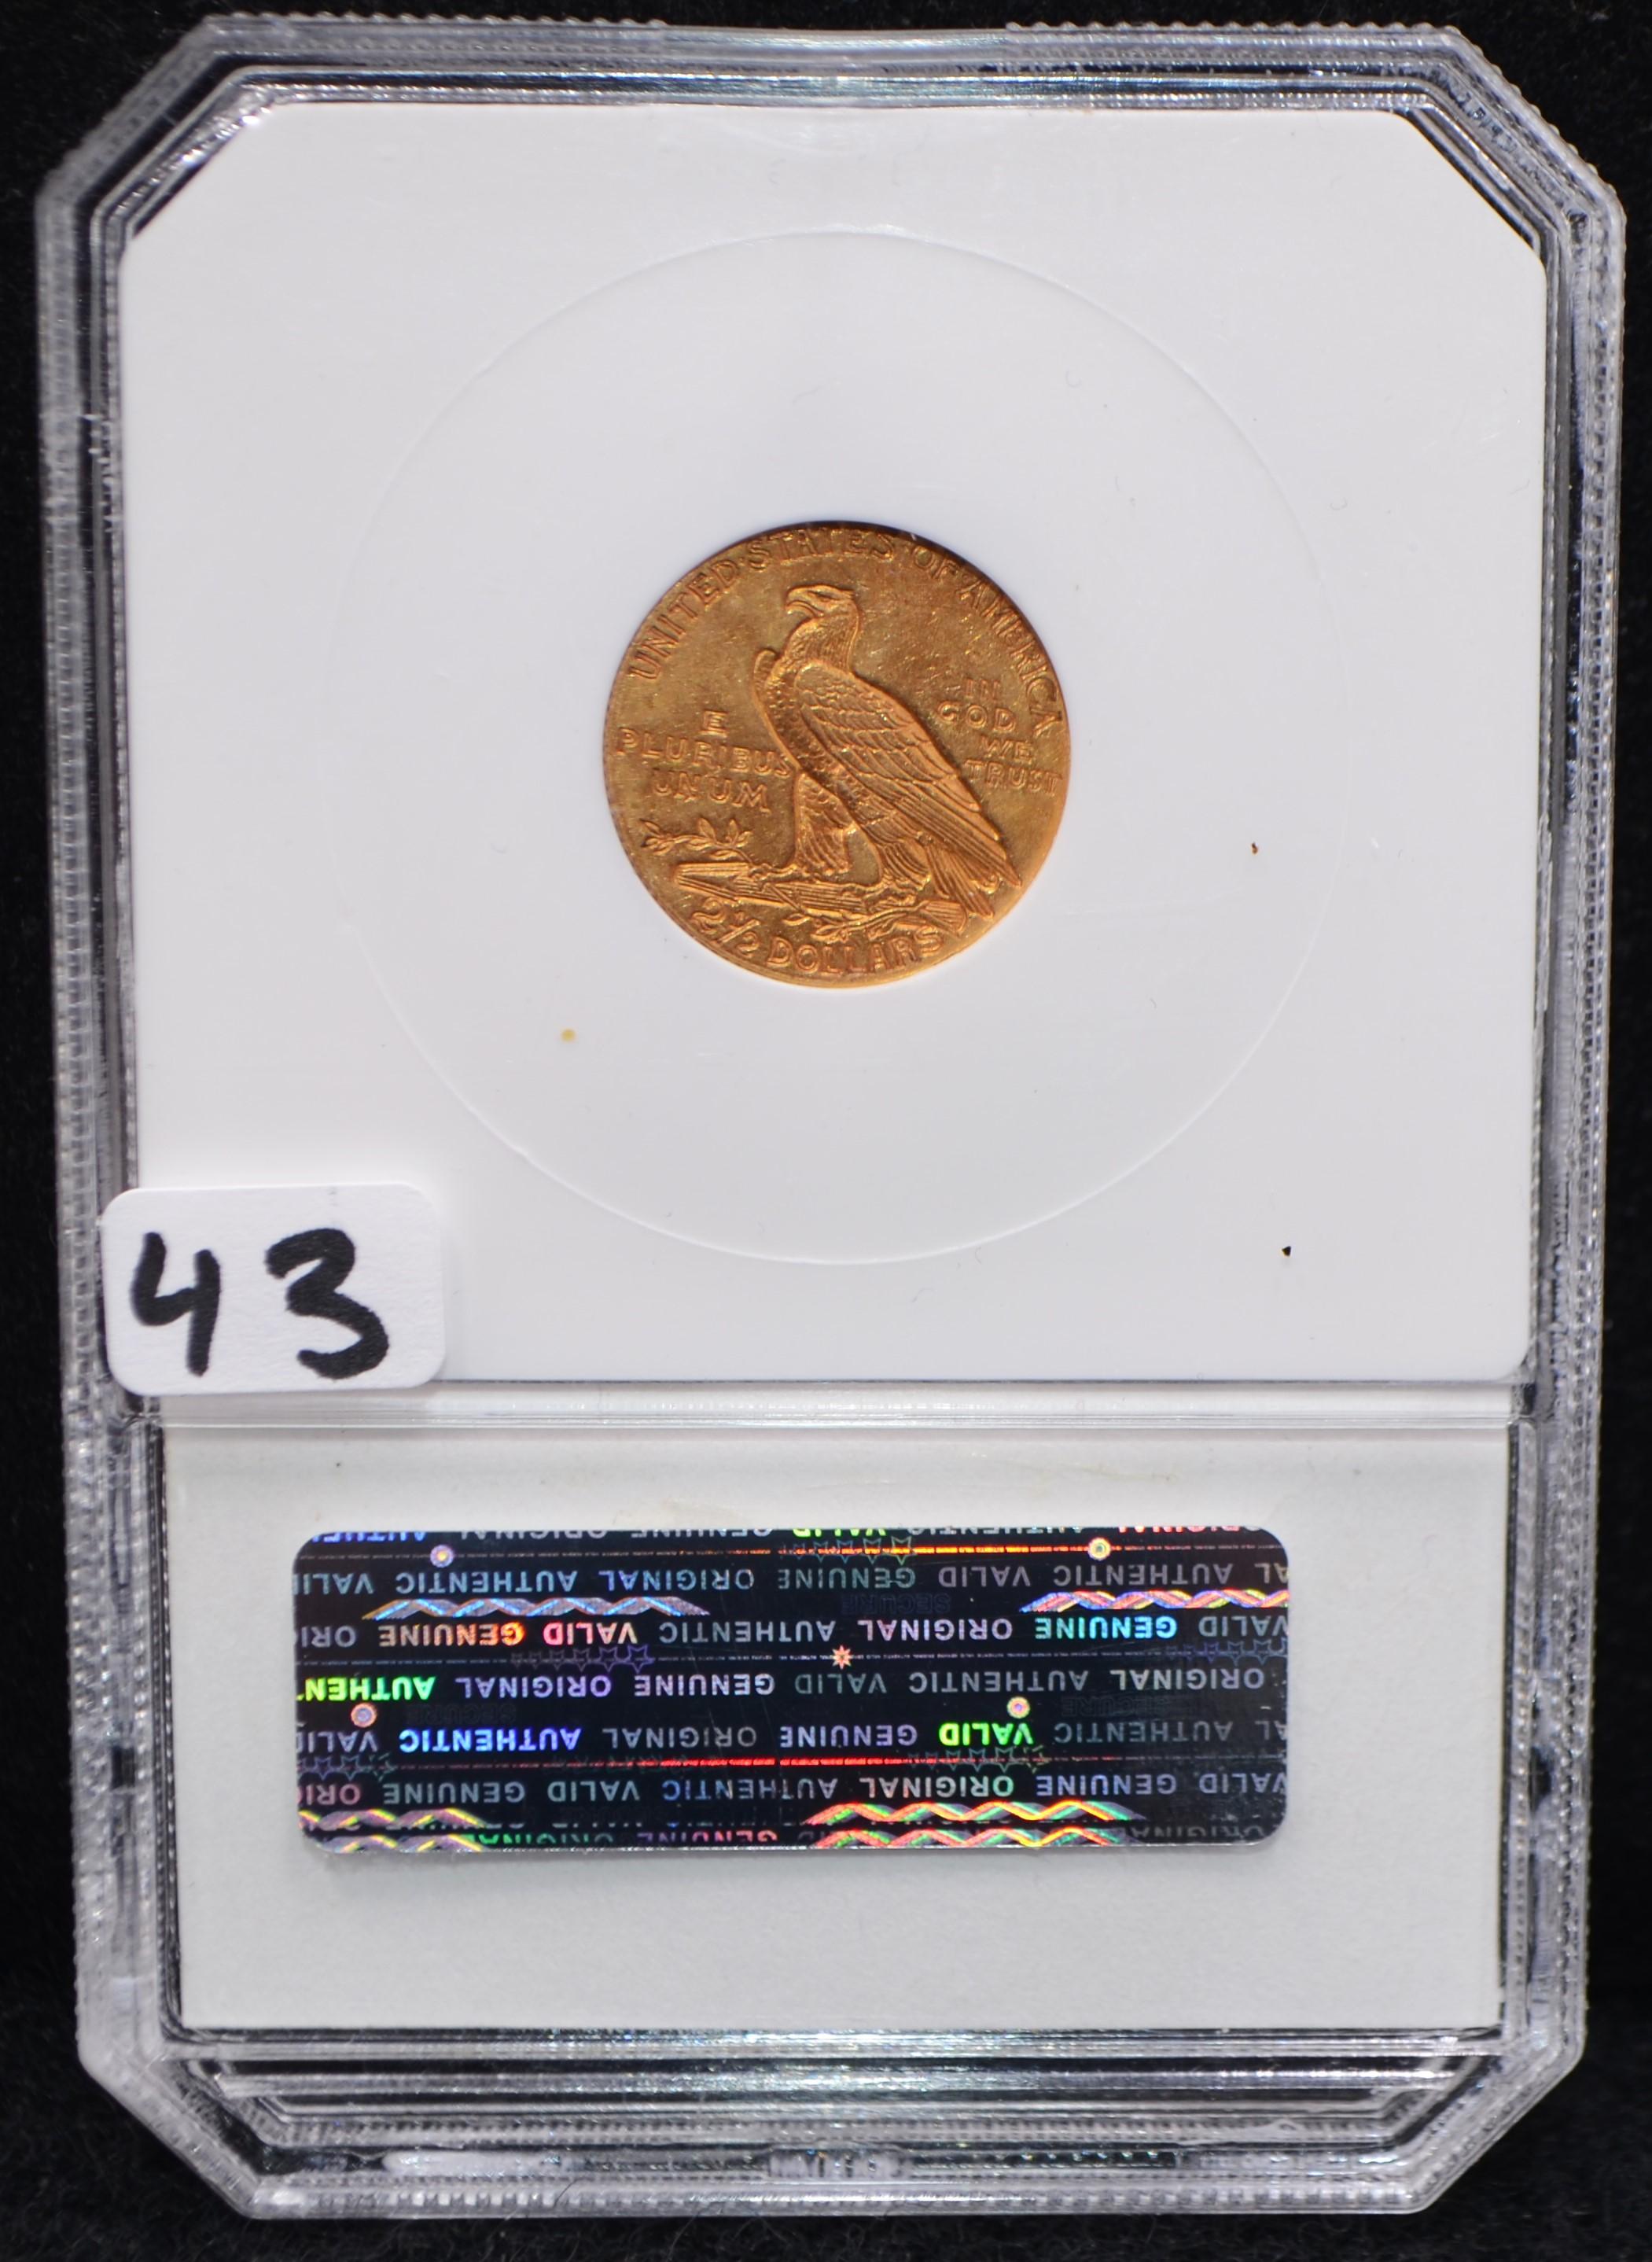 HIGH GRADE 1911 $2 1/2 INDIAN HEAD GOLD COIN